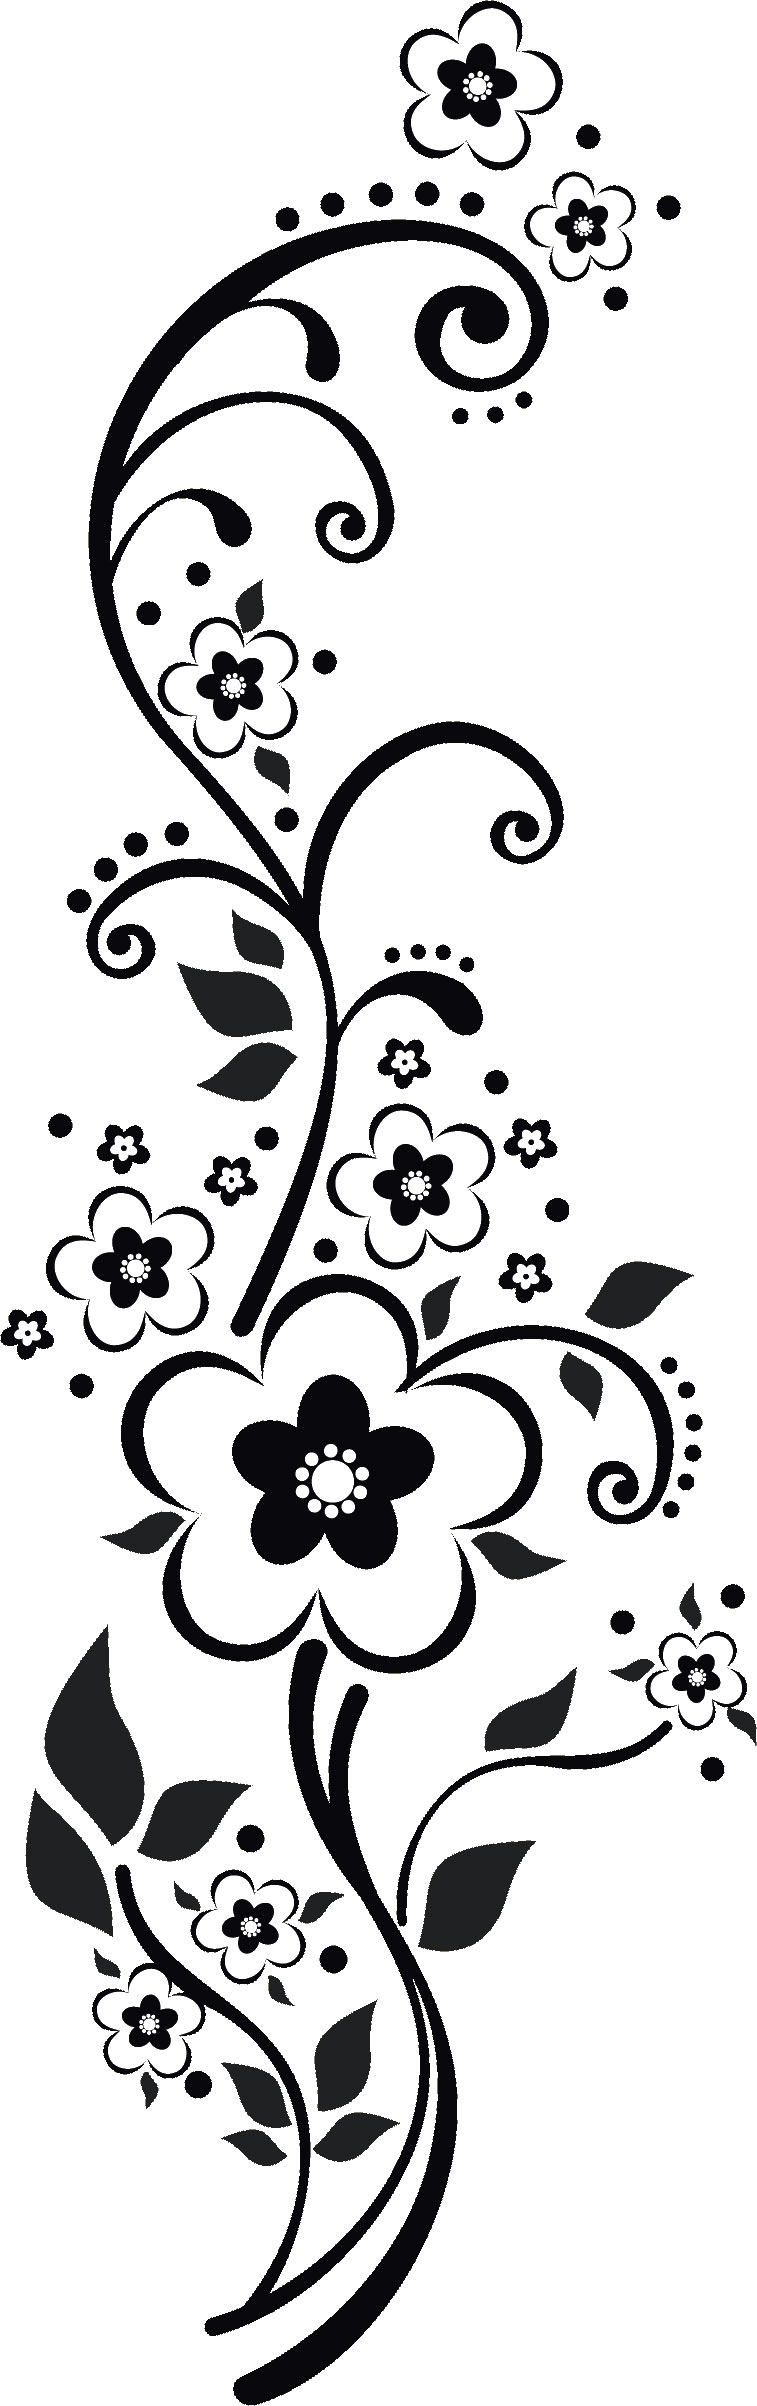 ポップでかわいい花のイラスト フリー素材 No 1179 白黒 茎葉 縦長